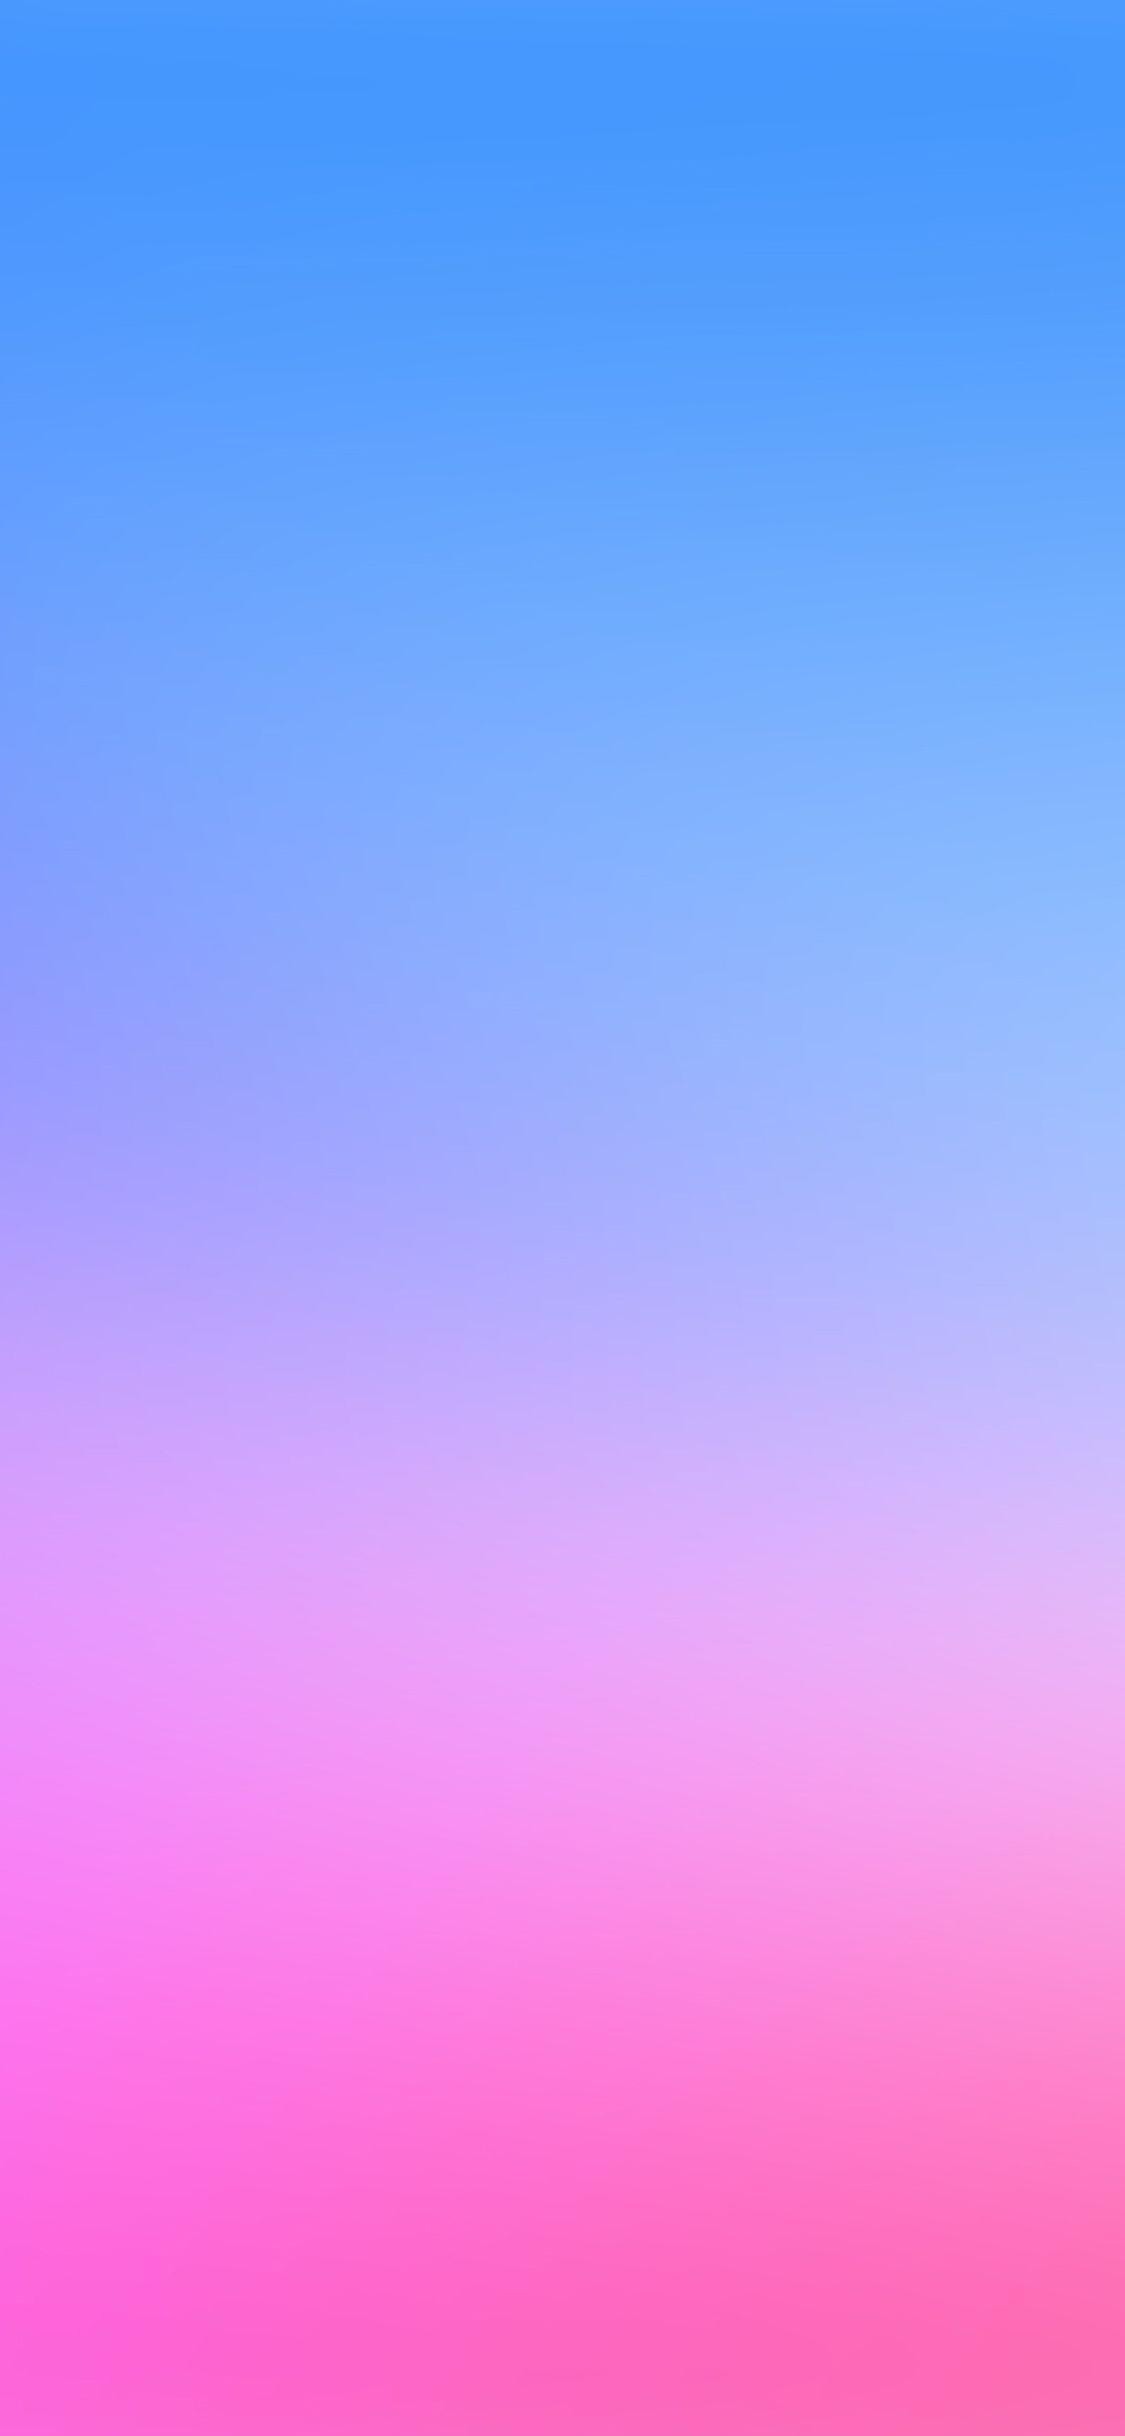 Hãy chiêm ngưỡng hình nền điện thoại màu hồng và xanh dương đầy màu sắc này và cảm nhận được sự tươi trẻ và tràn đầy năng lượng! Kết hợp giữa hai màu sắc này mang đến cho bạn một trải nghiệm độc đáo và tinh tế, khiến cho điện thoại của bạn trở nên nổi bật và thu hút người khác.